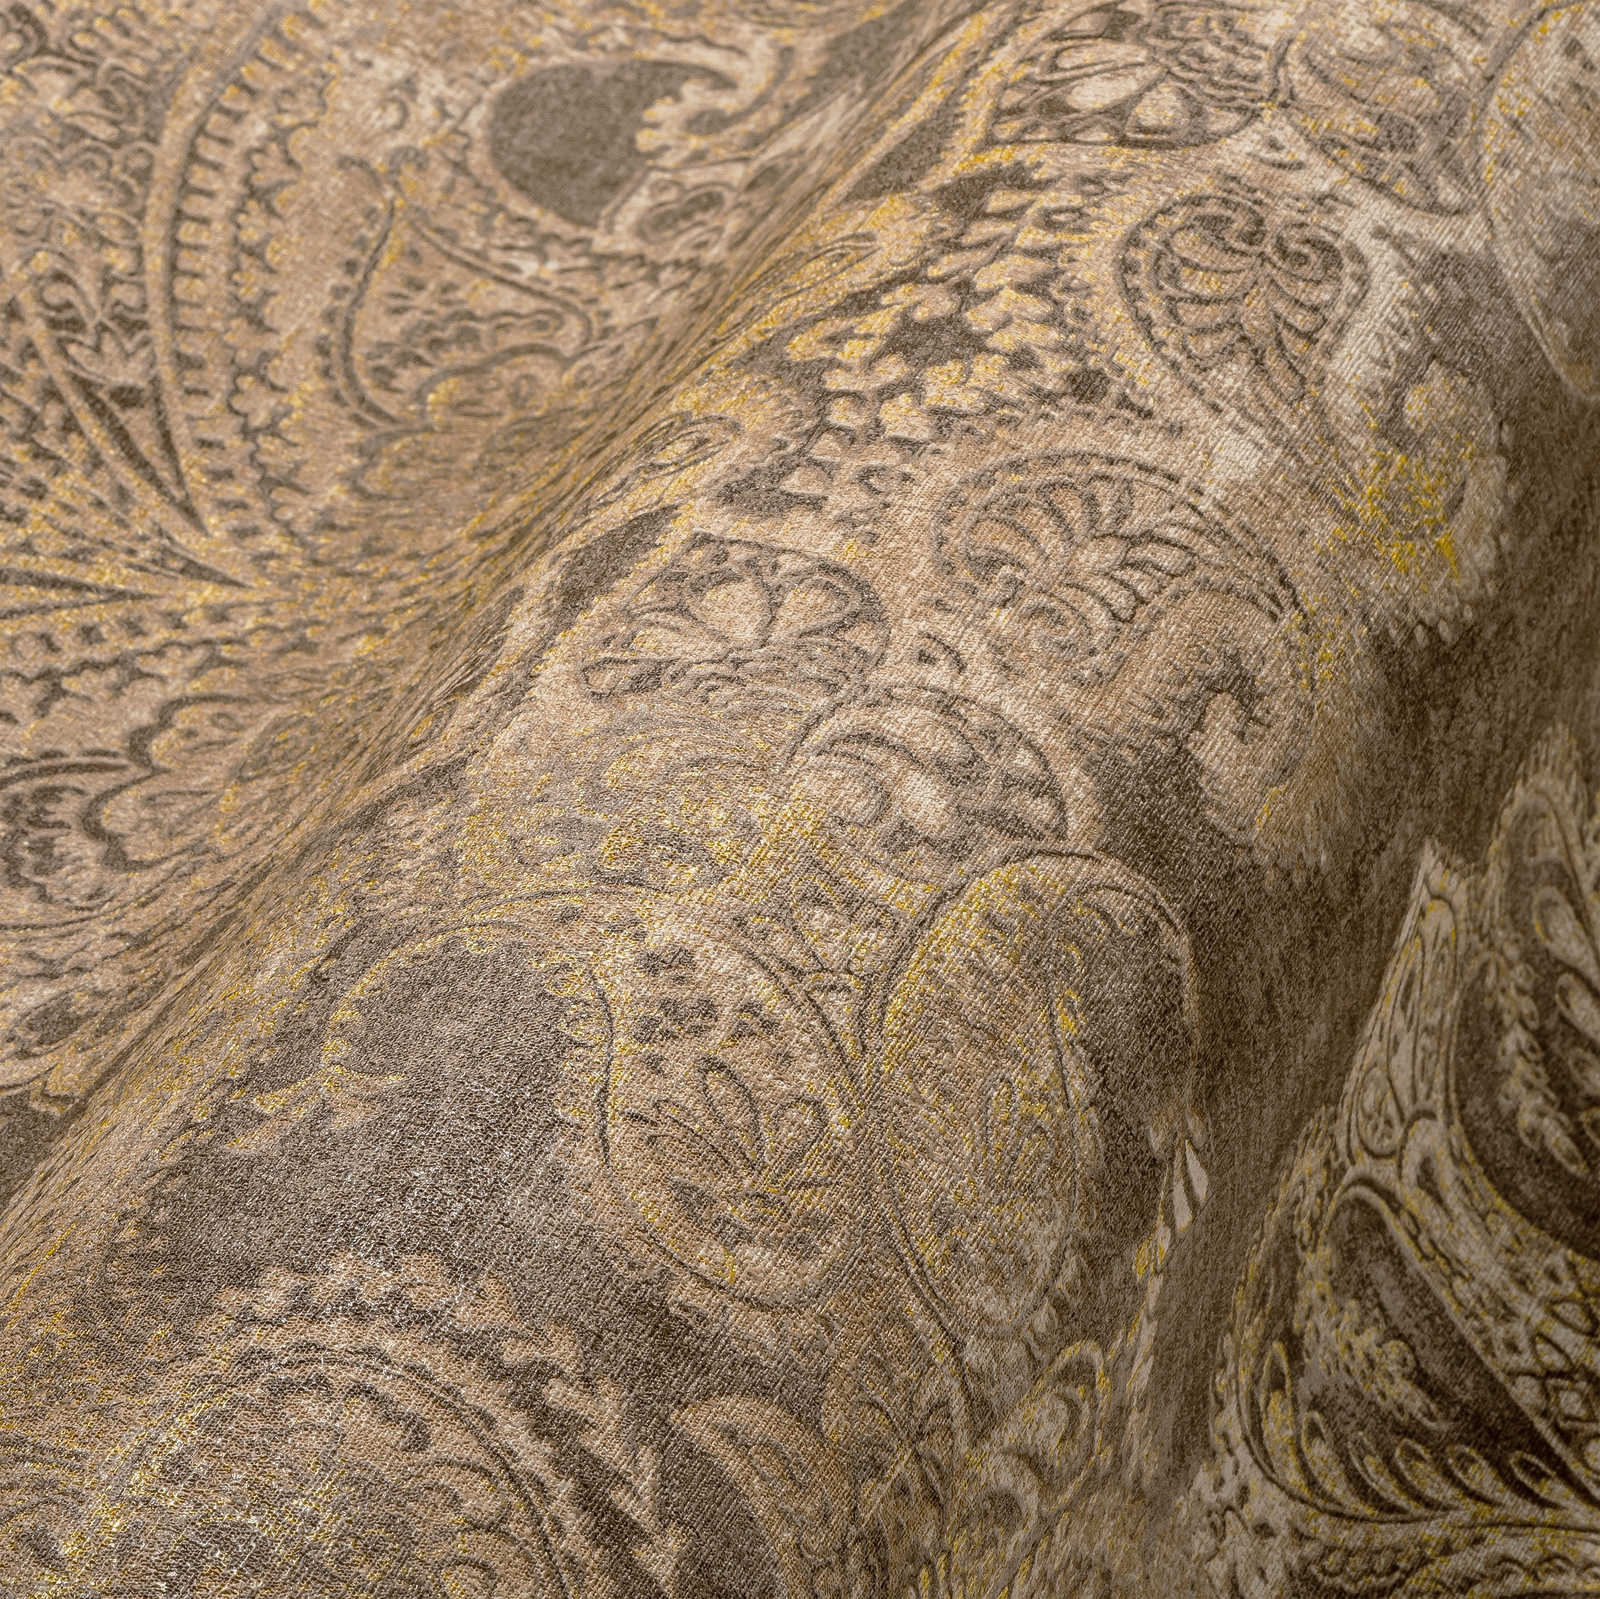             Papel pintado barroco con grandes ornamentos - marrón, beige, amarillo
        